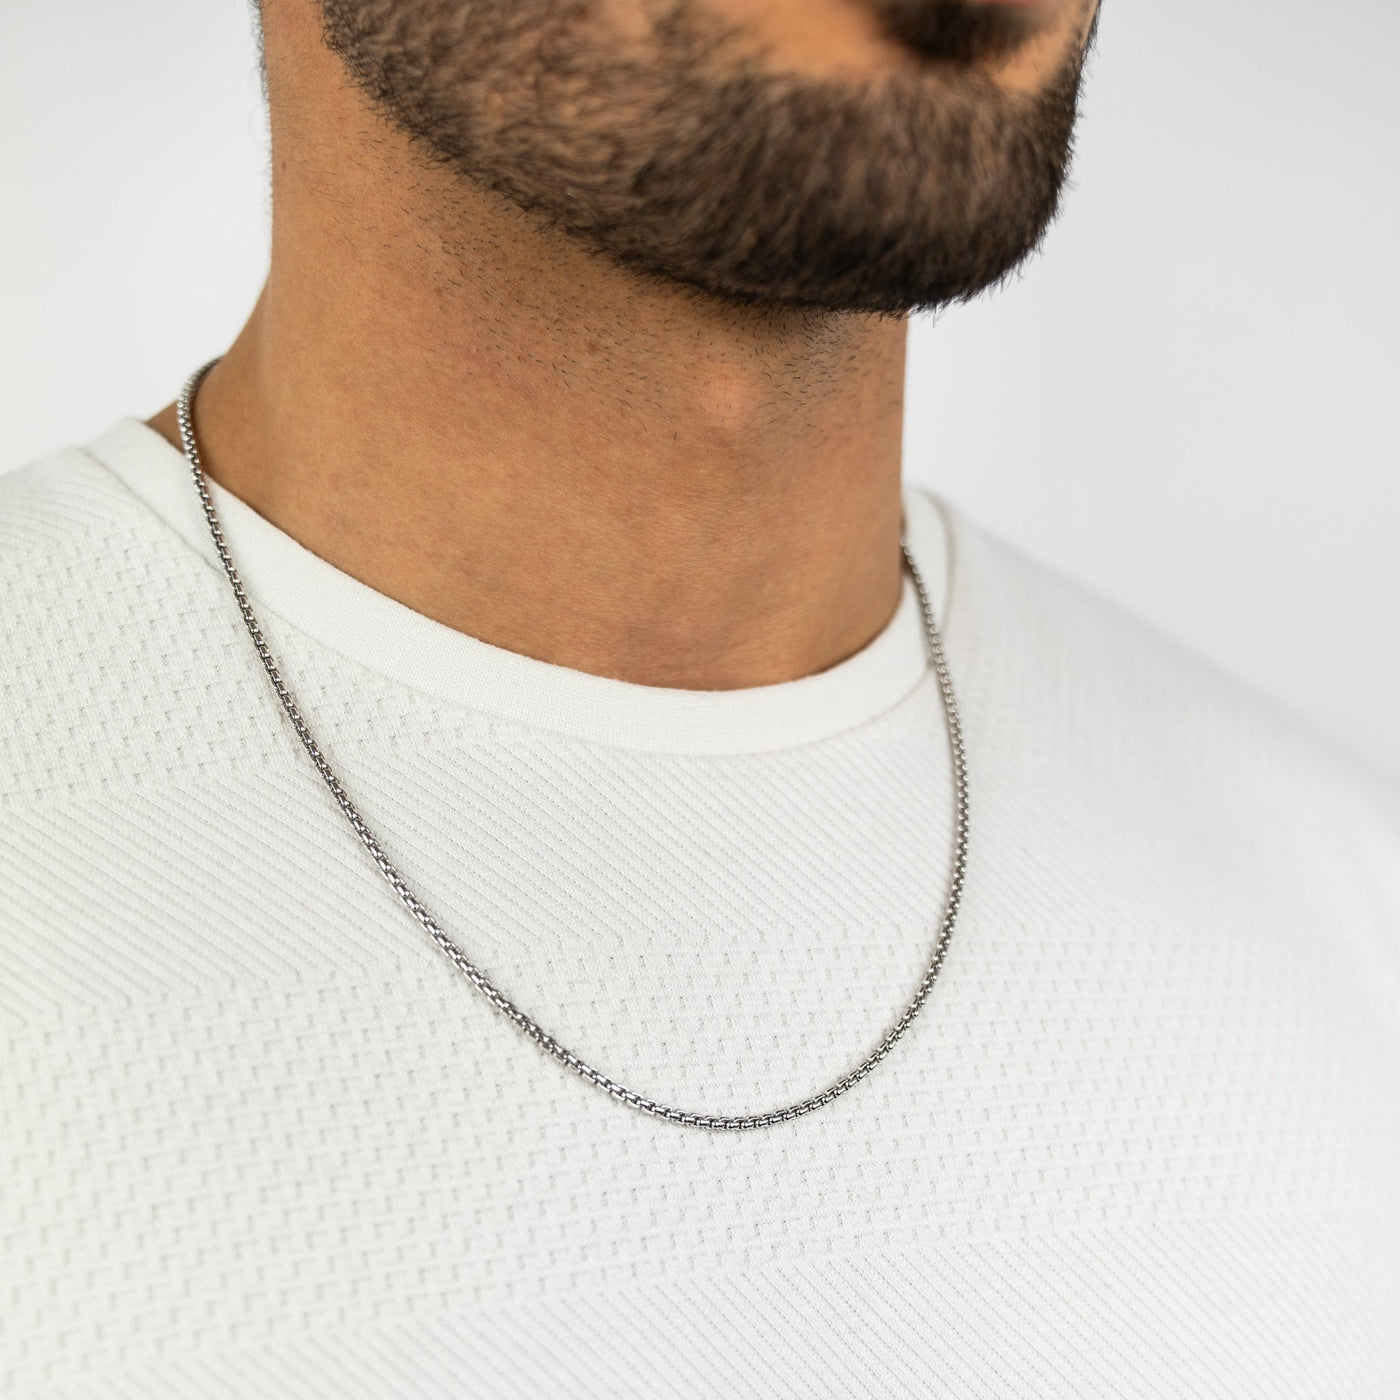 IDENTIM® Herren Venezianerkette Rhodiniert Silber Rund 2.70mm 925 Silberkette Herrenkette Halskette